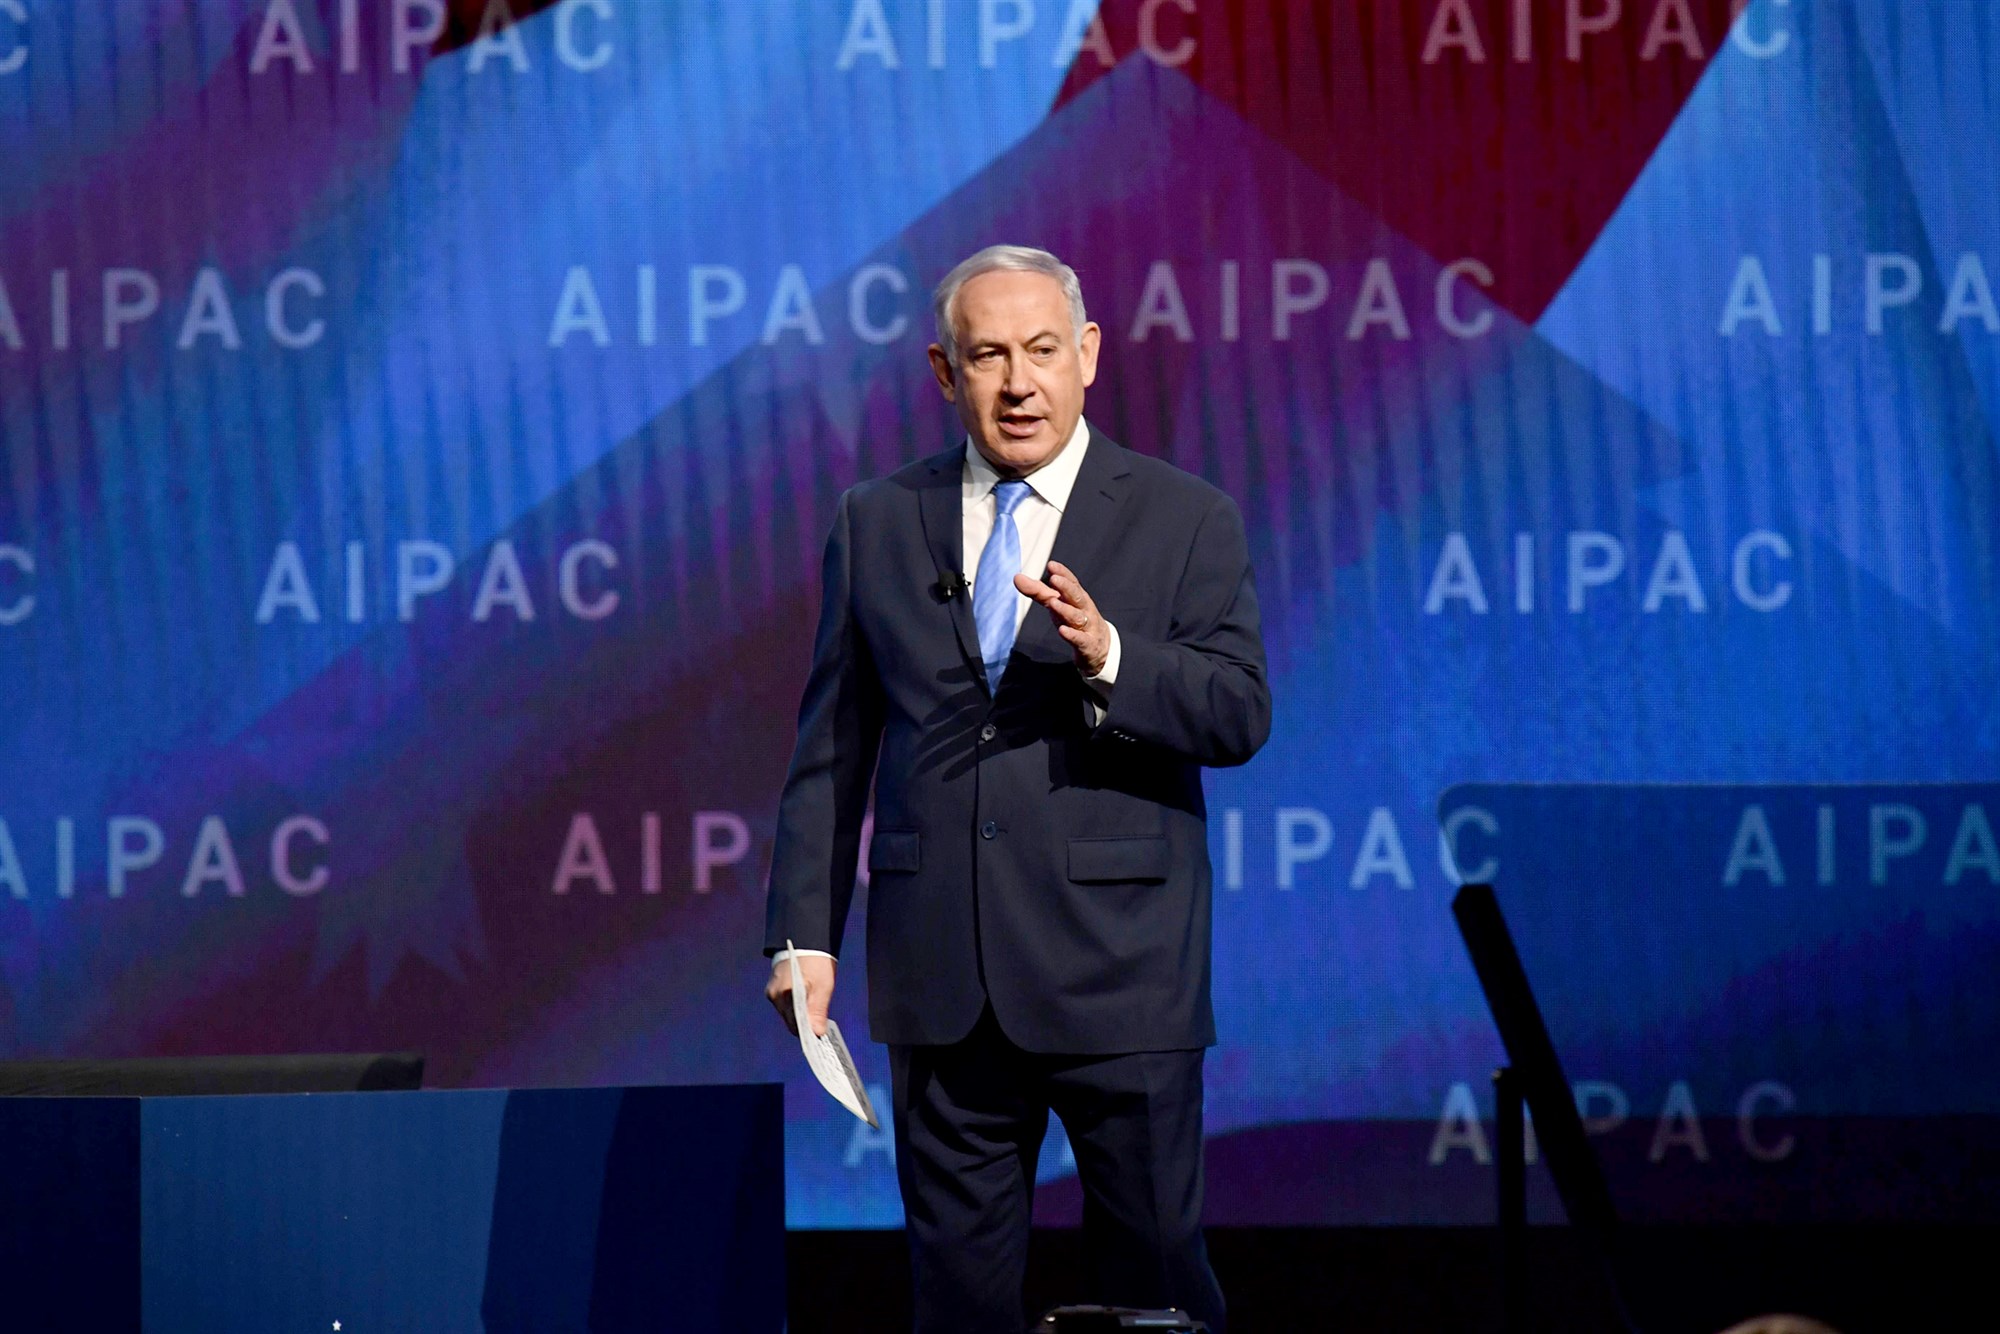 نتانياهو خلال مشاركته في مؤتمر ايباك السنوي في العام 2018 